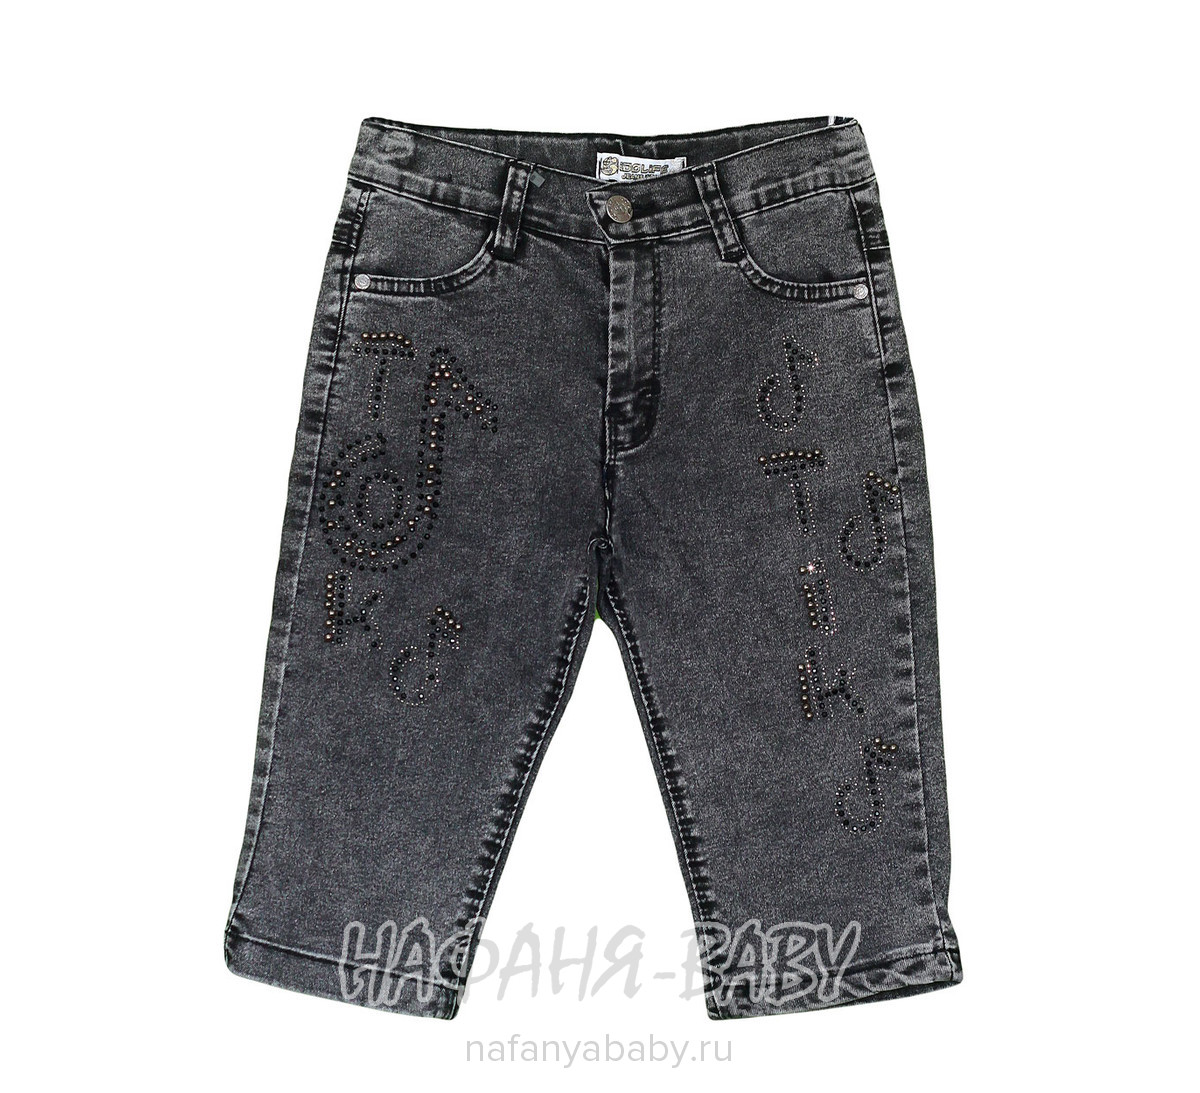 Детские джинсовые шорты IDO LIFE арт: 867 3-7, 5-9 лет, 1-4 года, цвет черный, оптом Турция